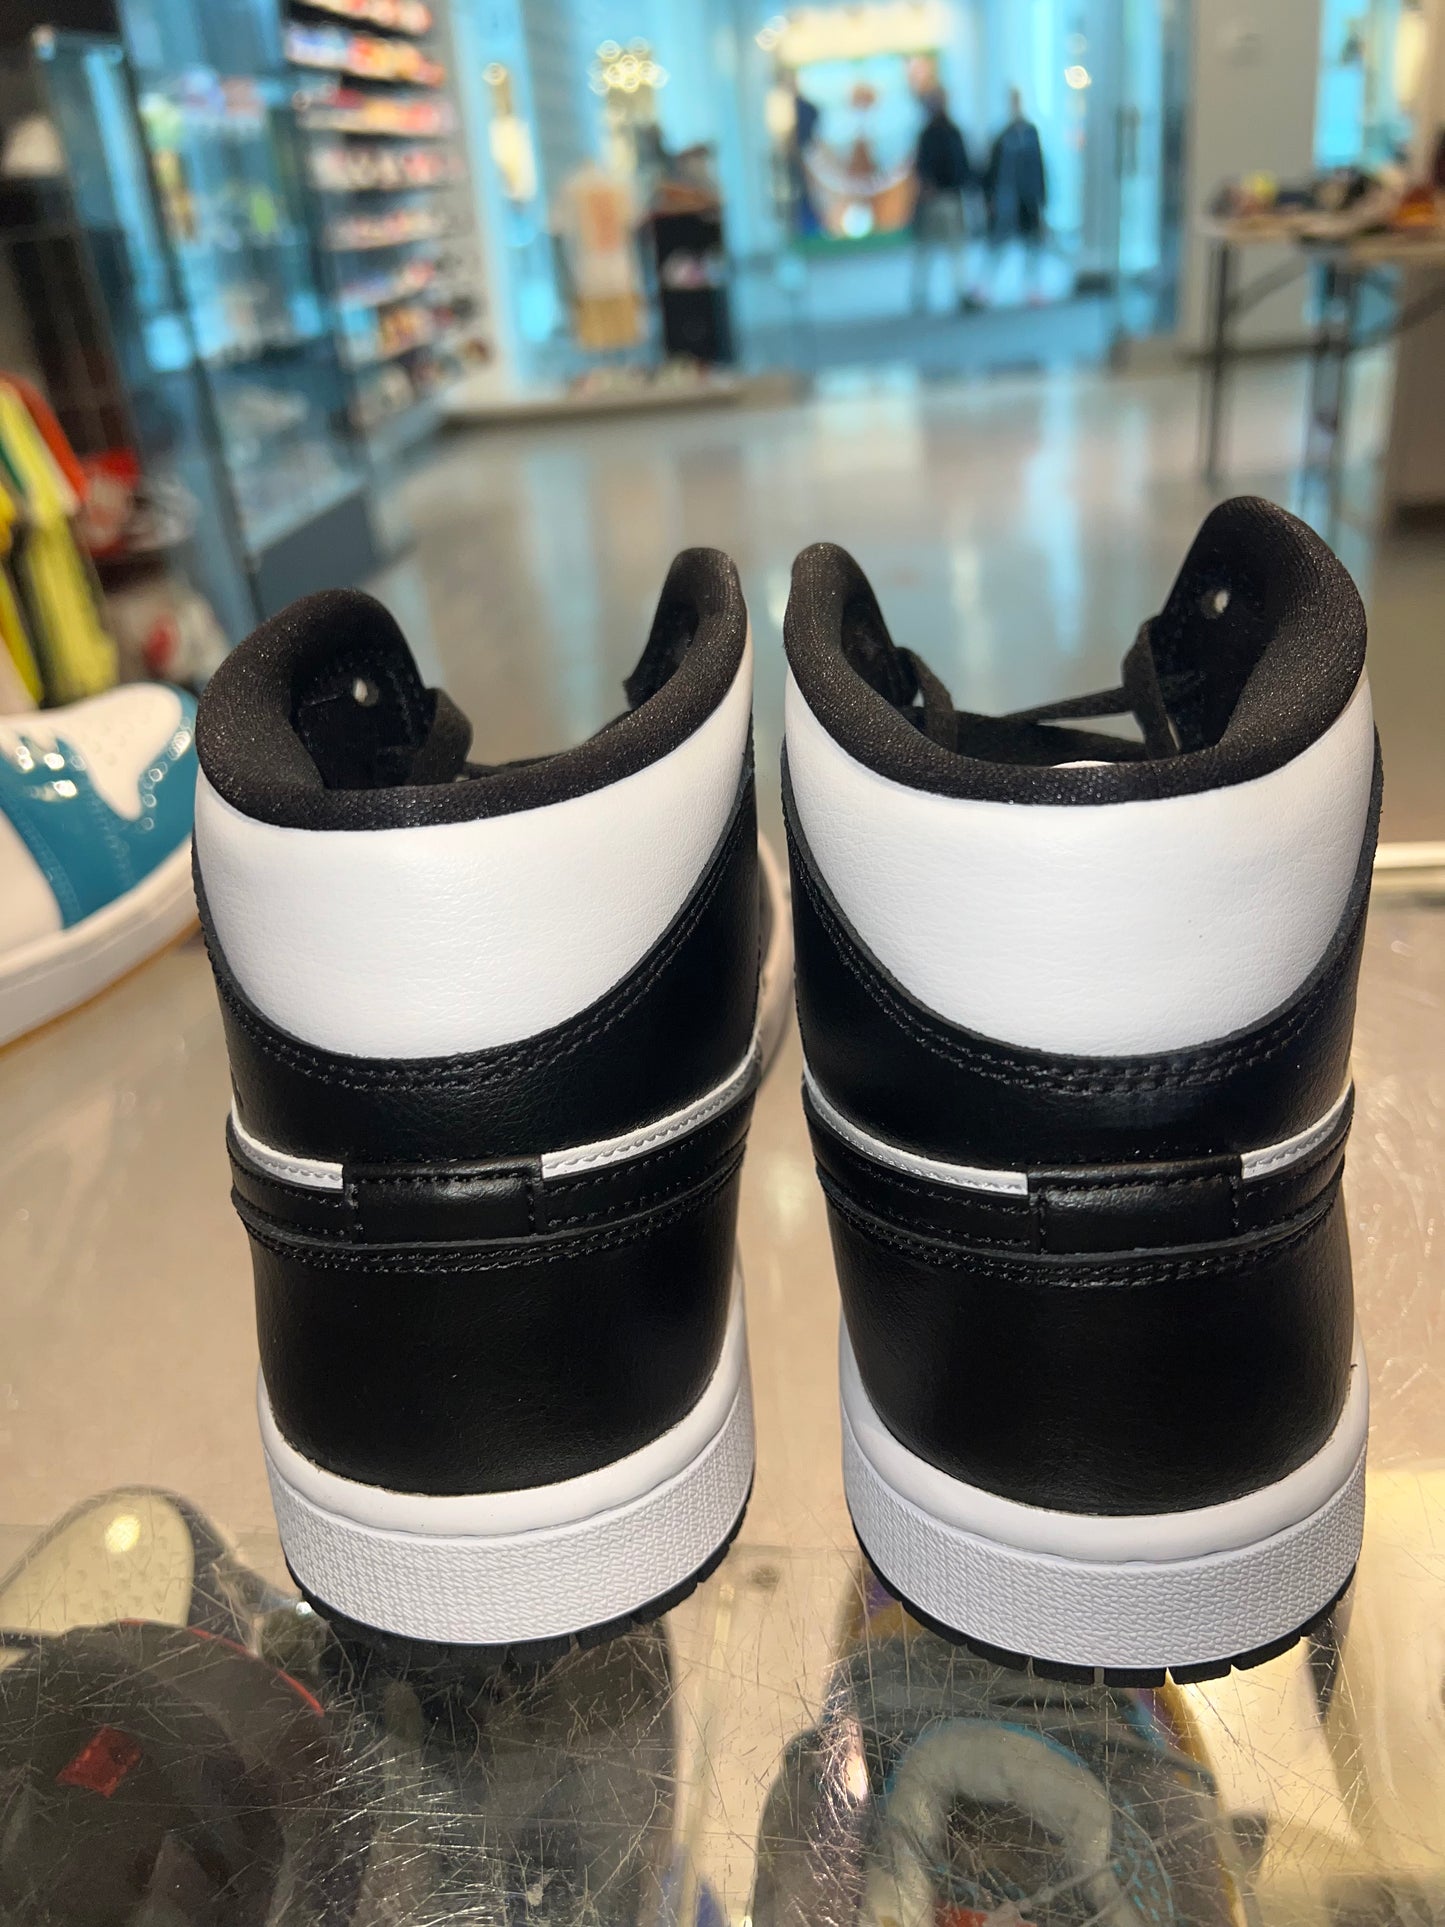 Size 7 (8.5w) Air Jordan 1 Mid “Panda” Brand New (Mall)